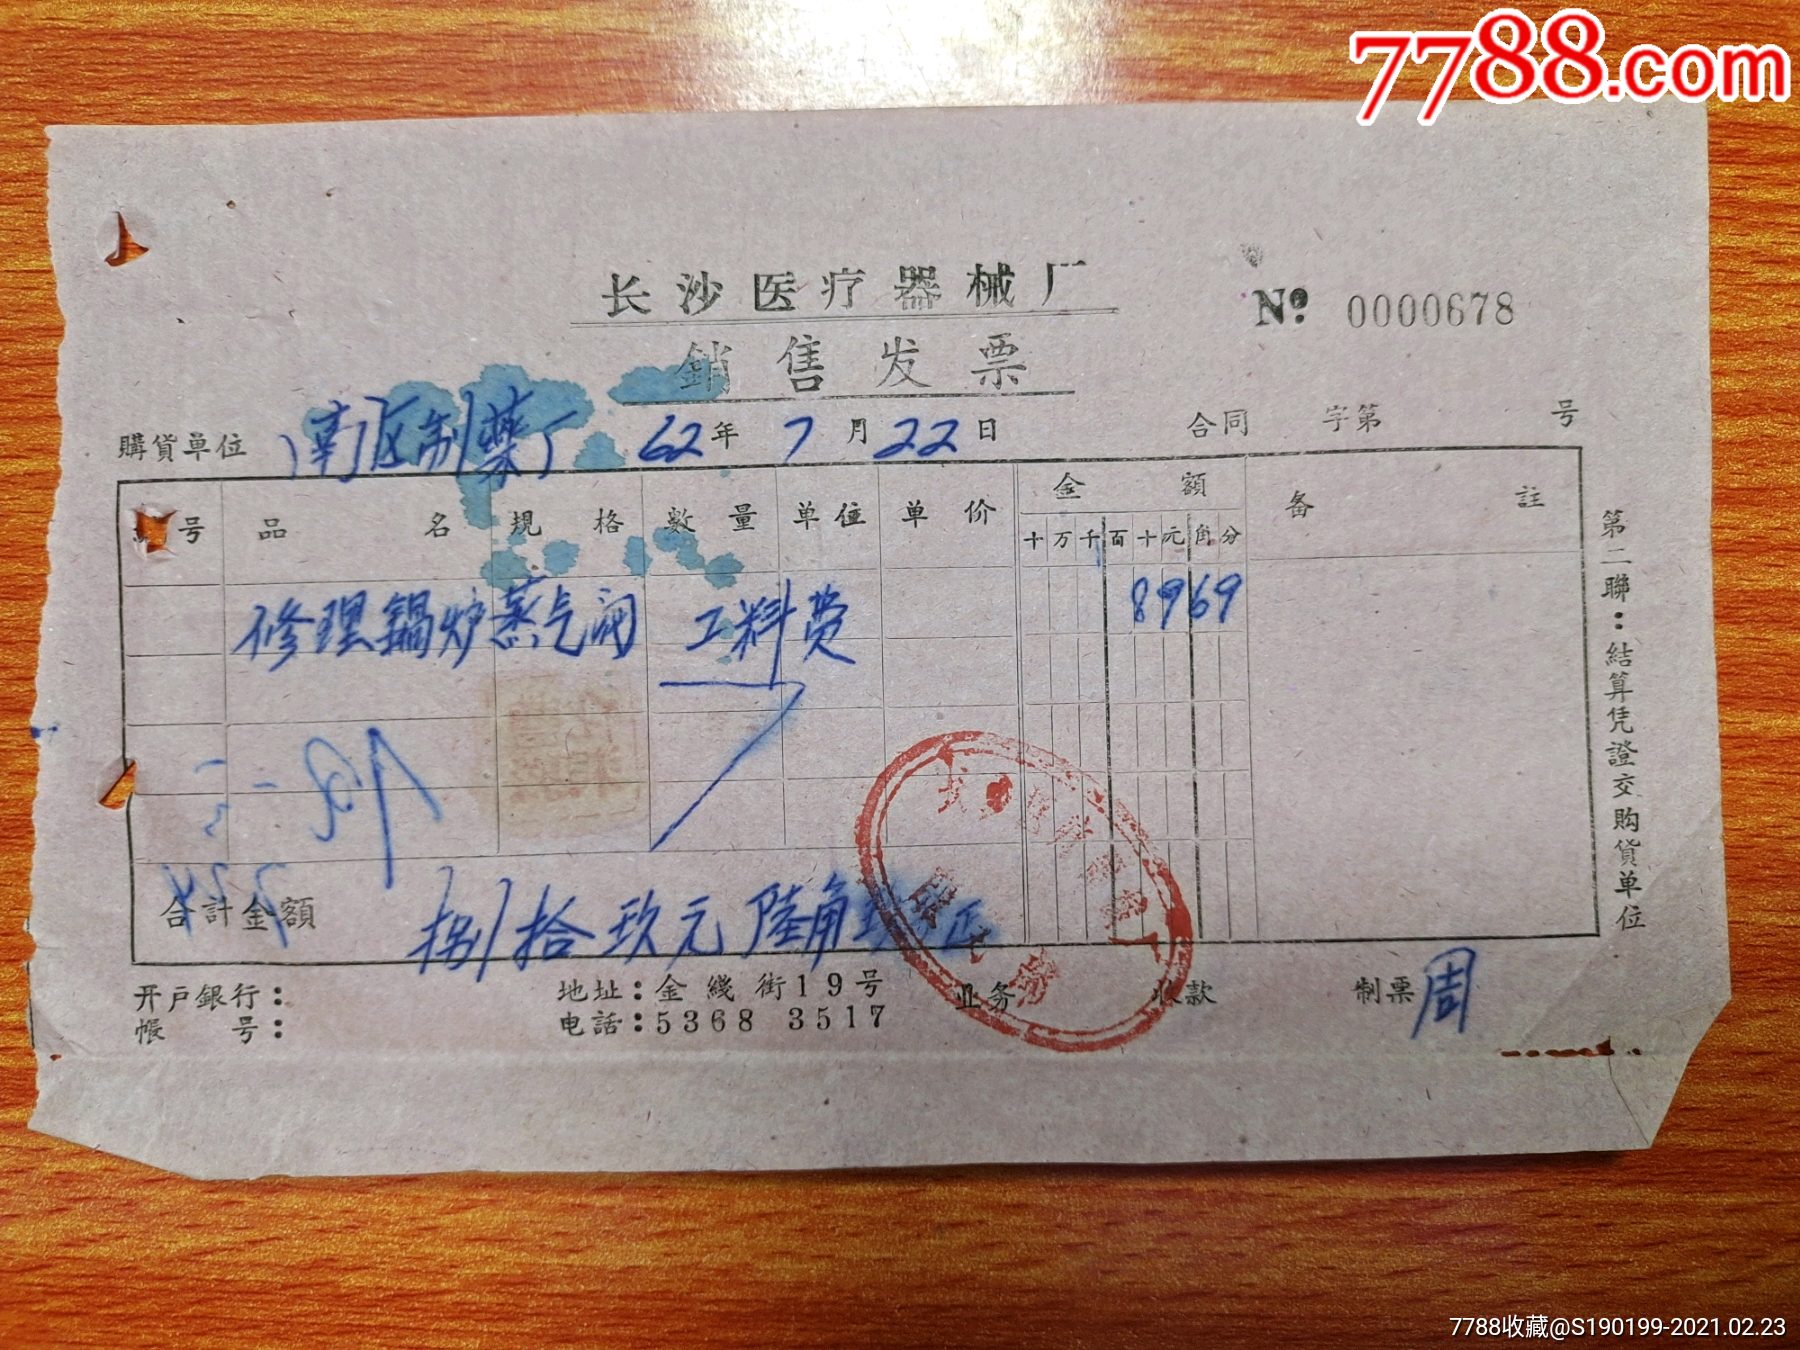 长沙市医疗器械厂销售发票(修理锅炉蒸汽阀工料费)